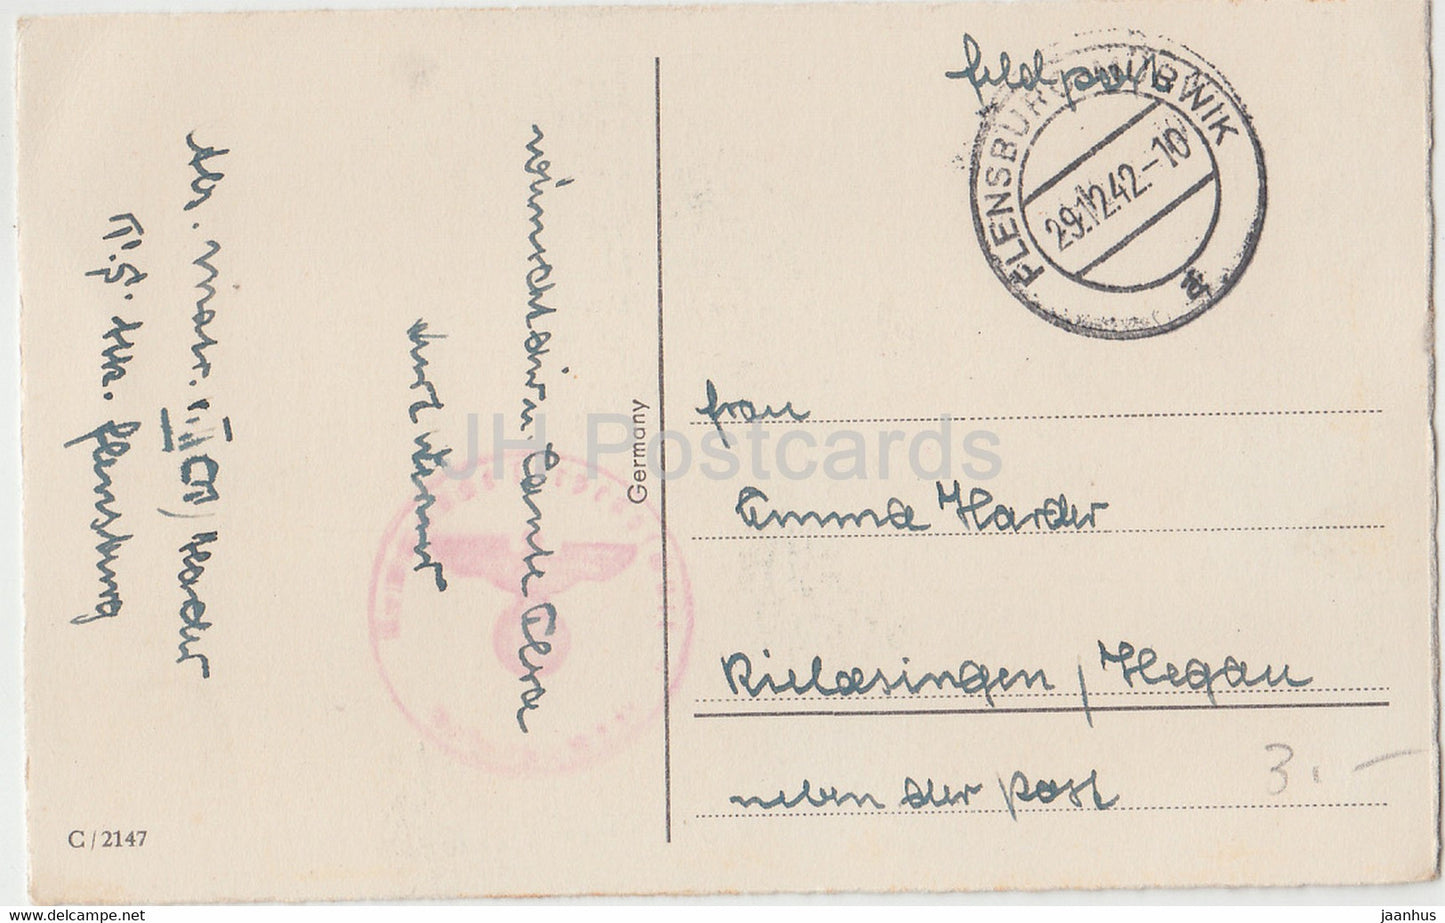 Neujahrsgrußkarte - Ein Frohes Neues Jahr - Tassen - Hufeisen - Feldpost 2147 - alte Postkarte - 1942 - Deutschland - gebraucht